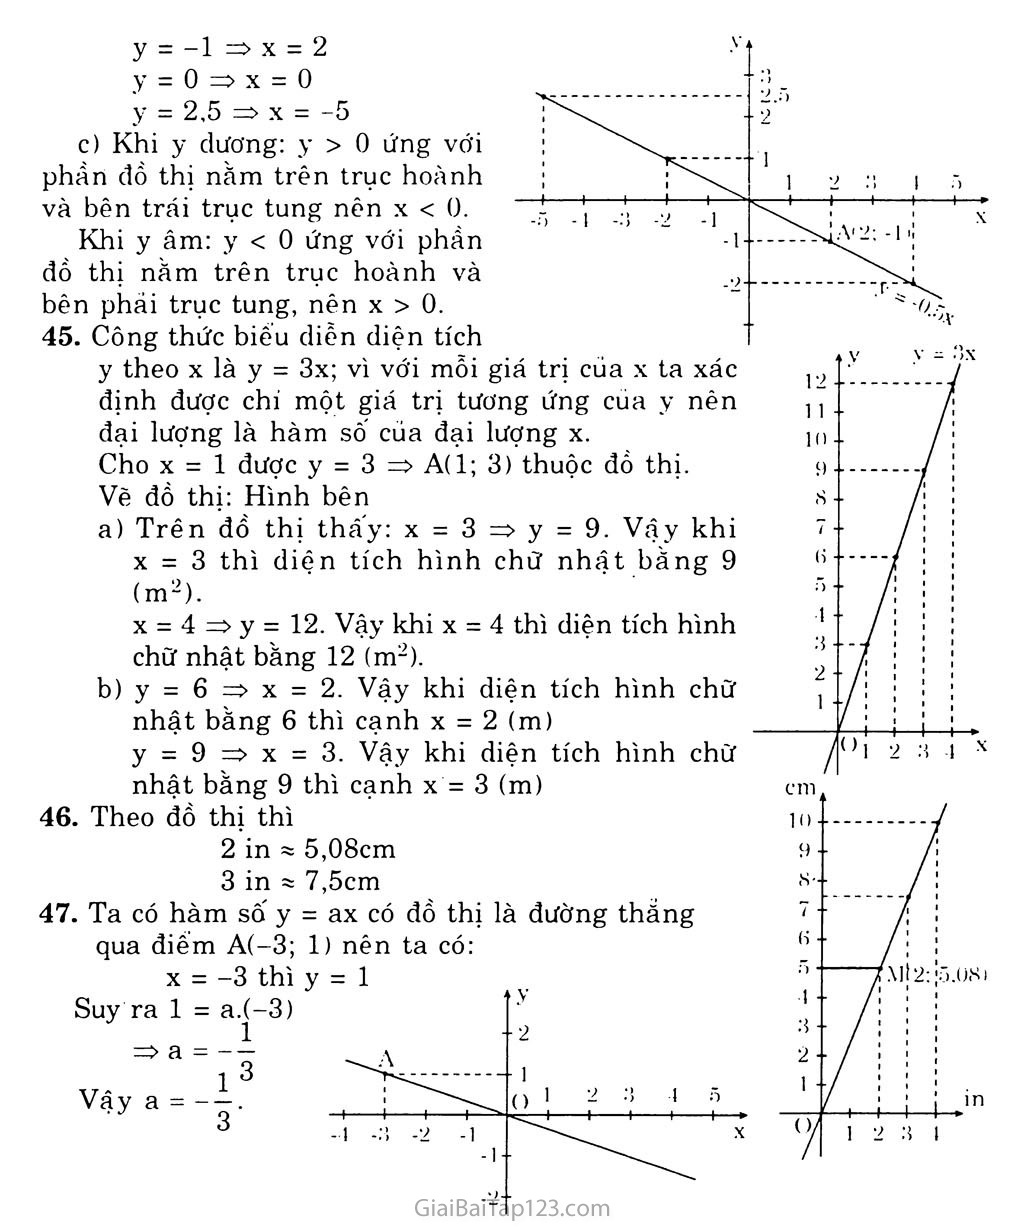 Bài 7. Đồ thị hàm số y = ax (a khác 0) trang 4